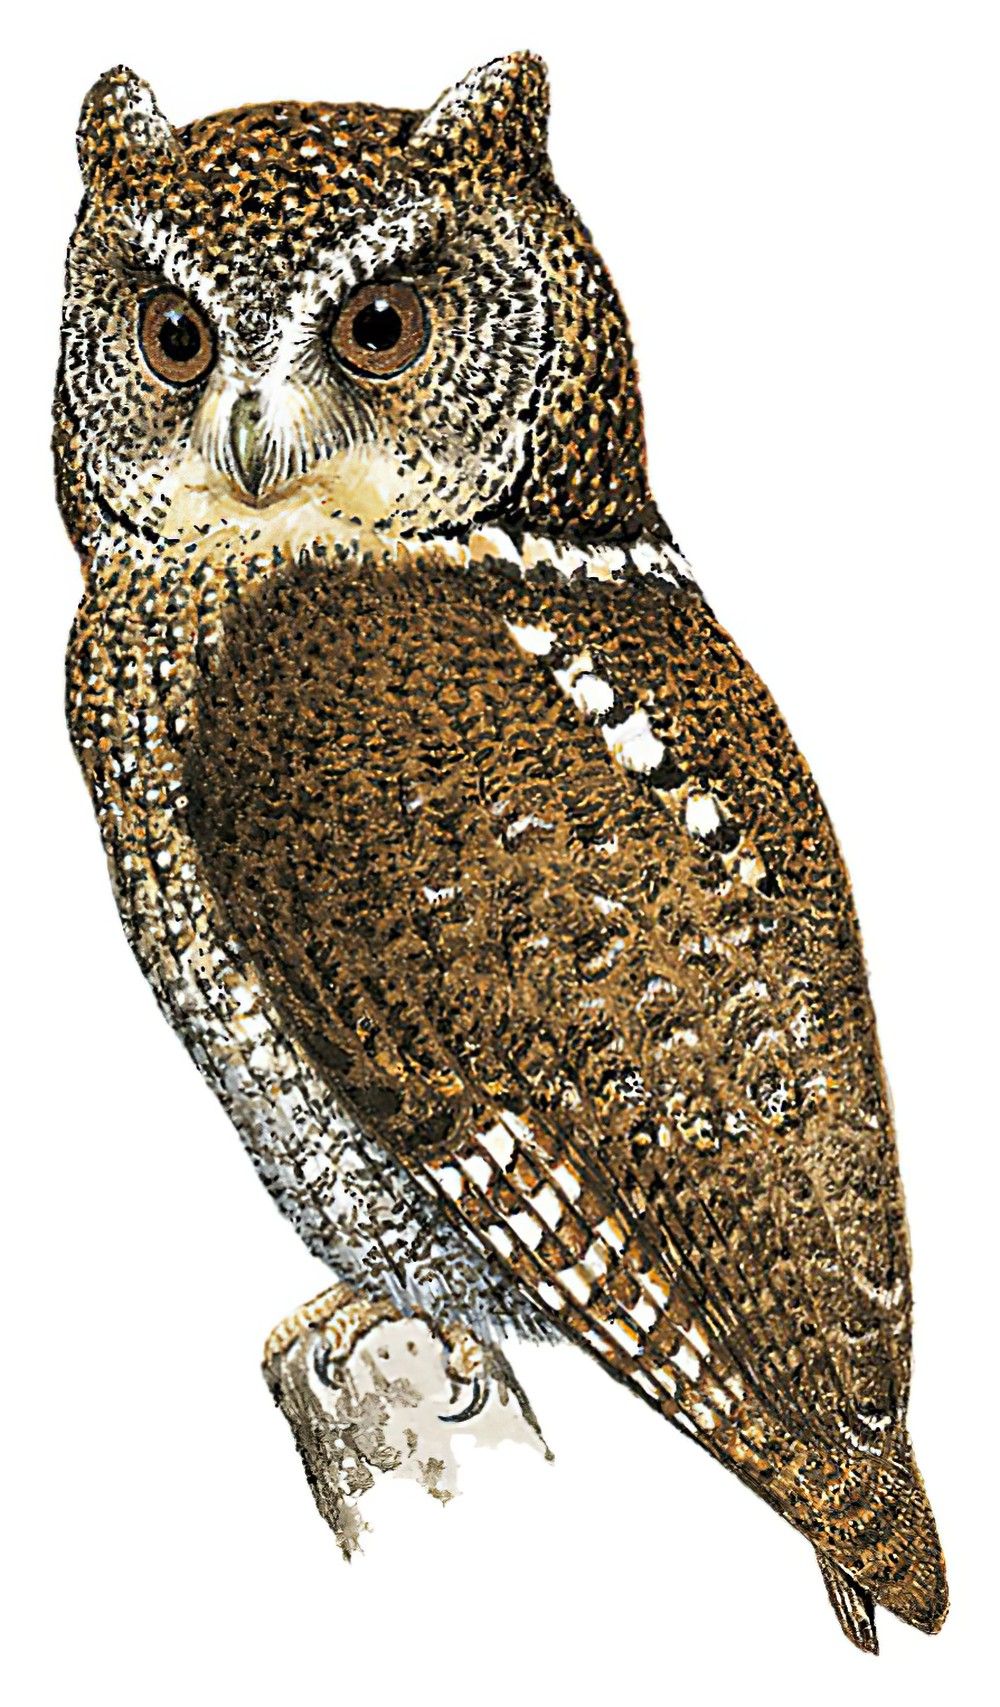 Mindanao Scops-Owl / Otus mirus